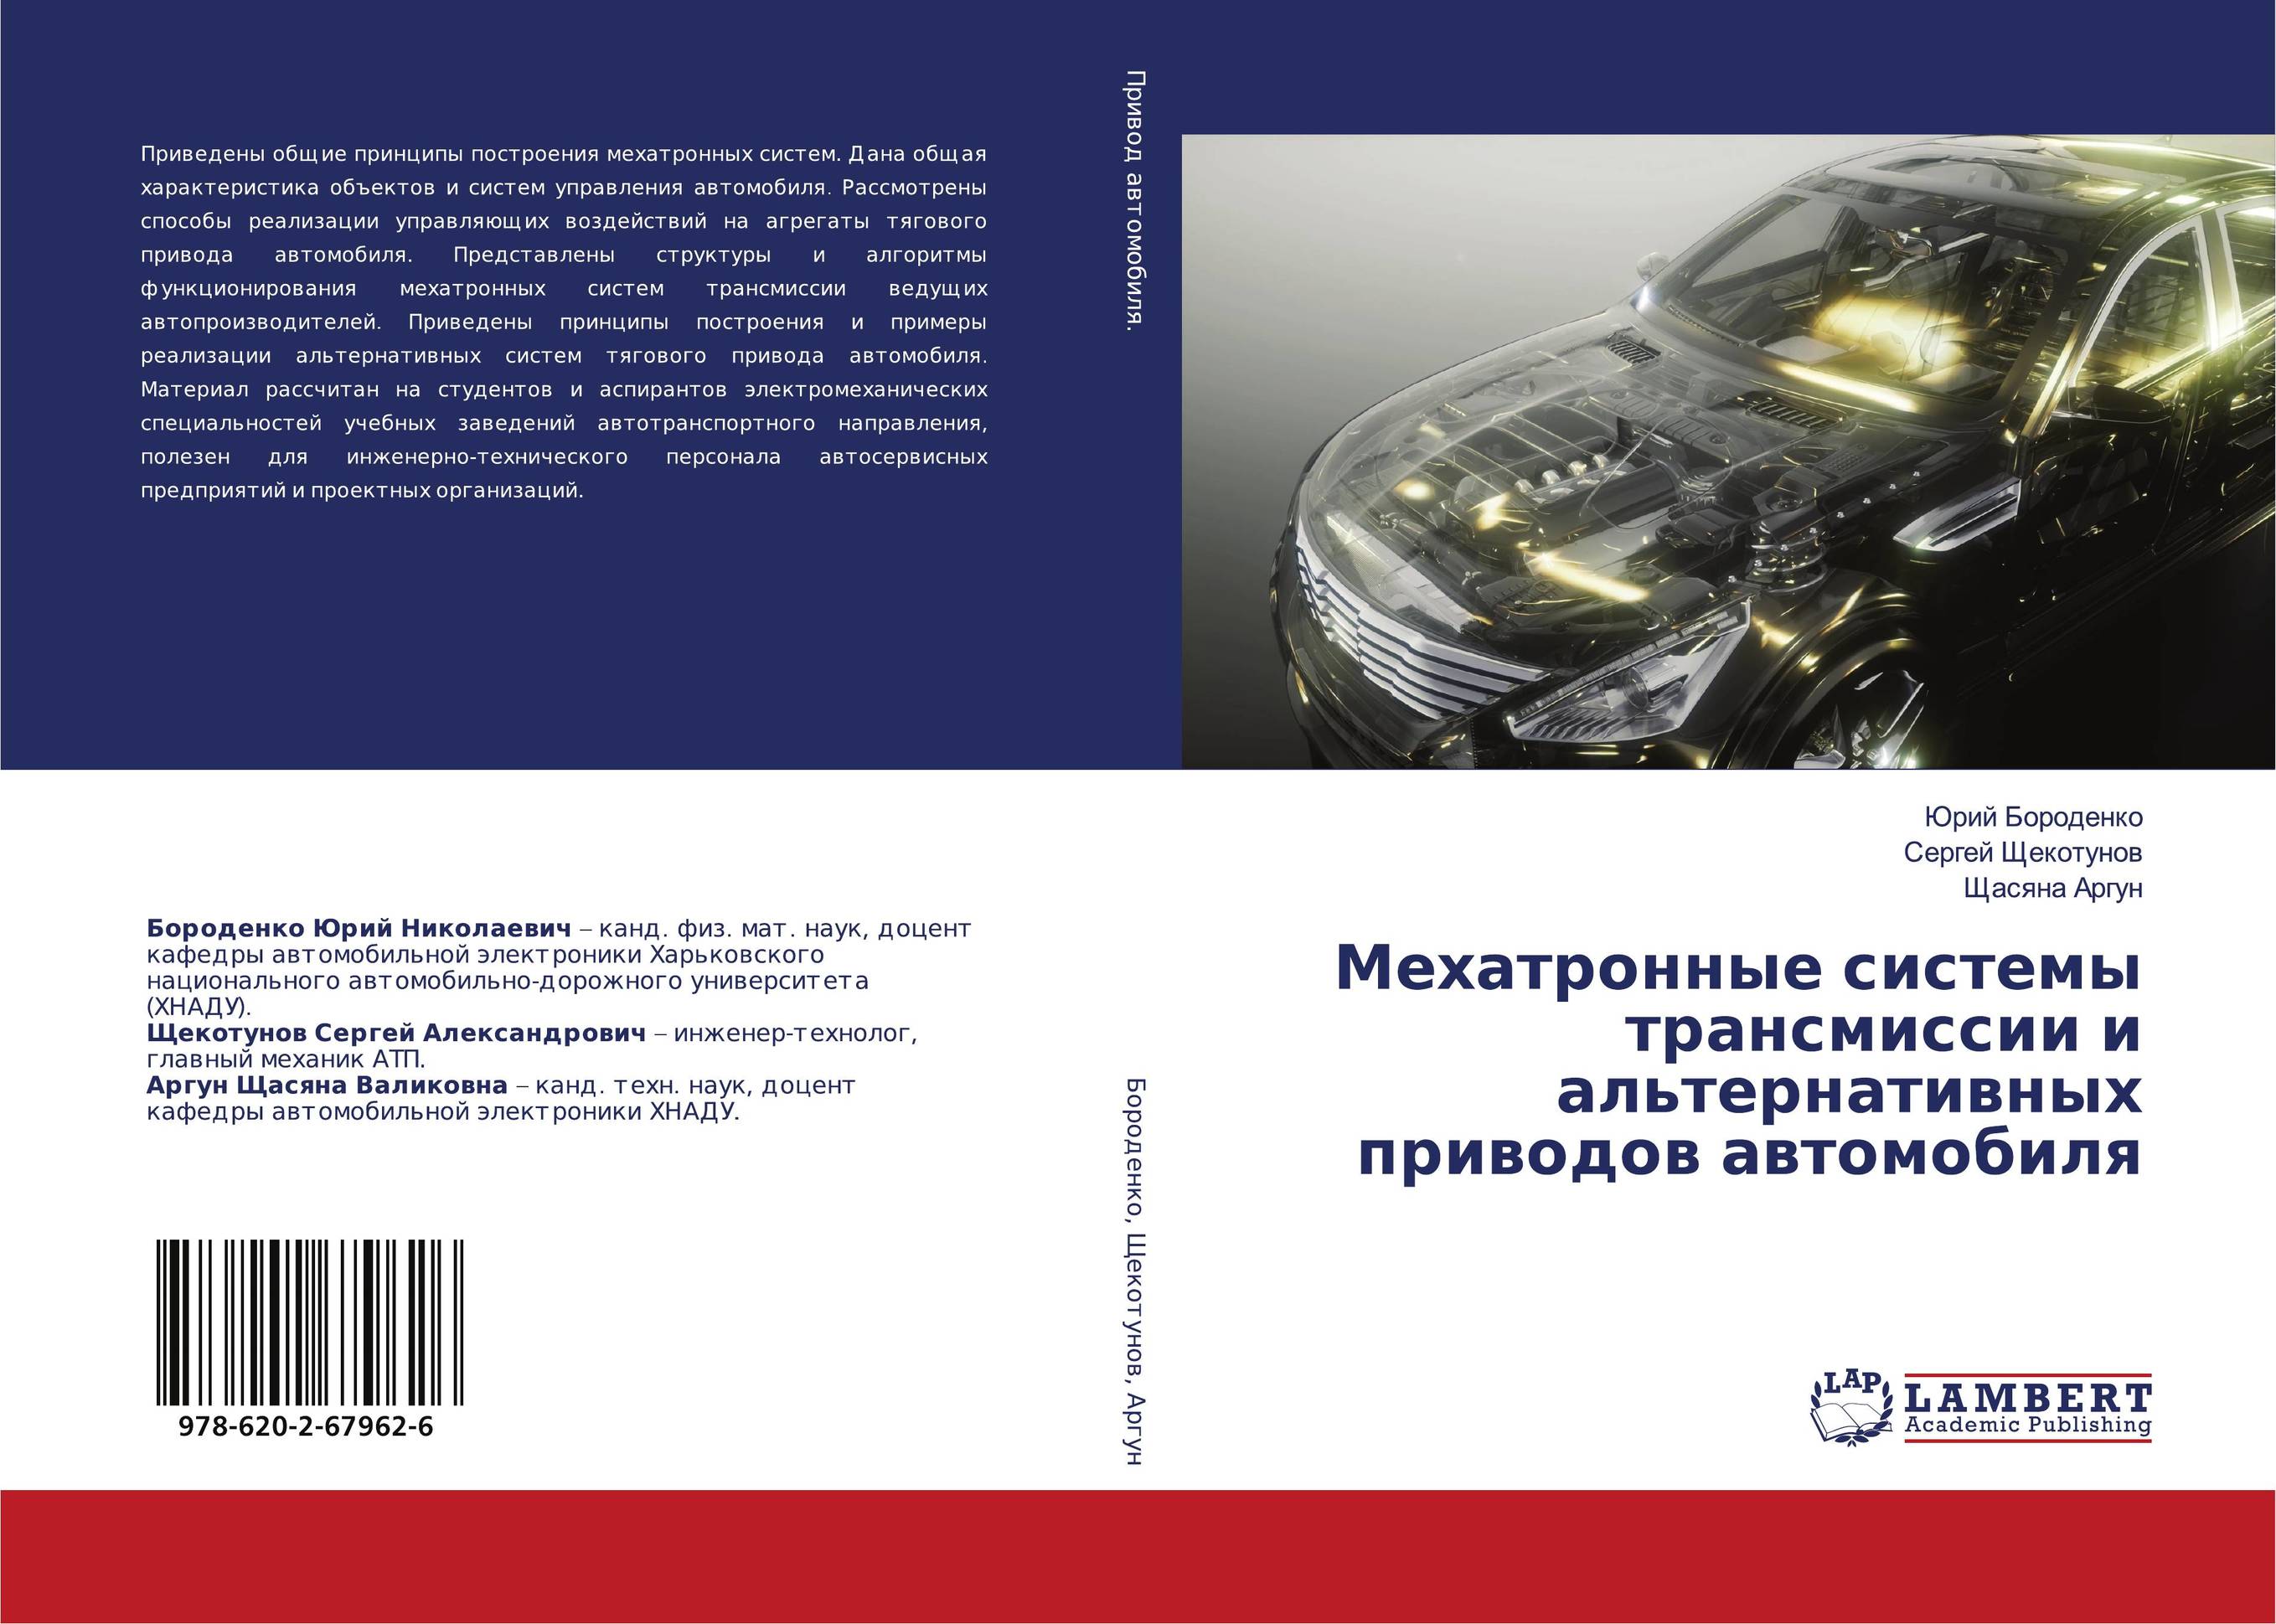 Мехатронные системы трансмиссии и альтернативных приводов автомобиля..